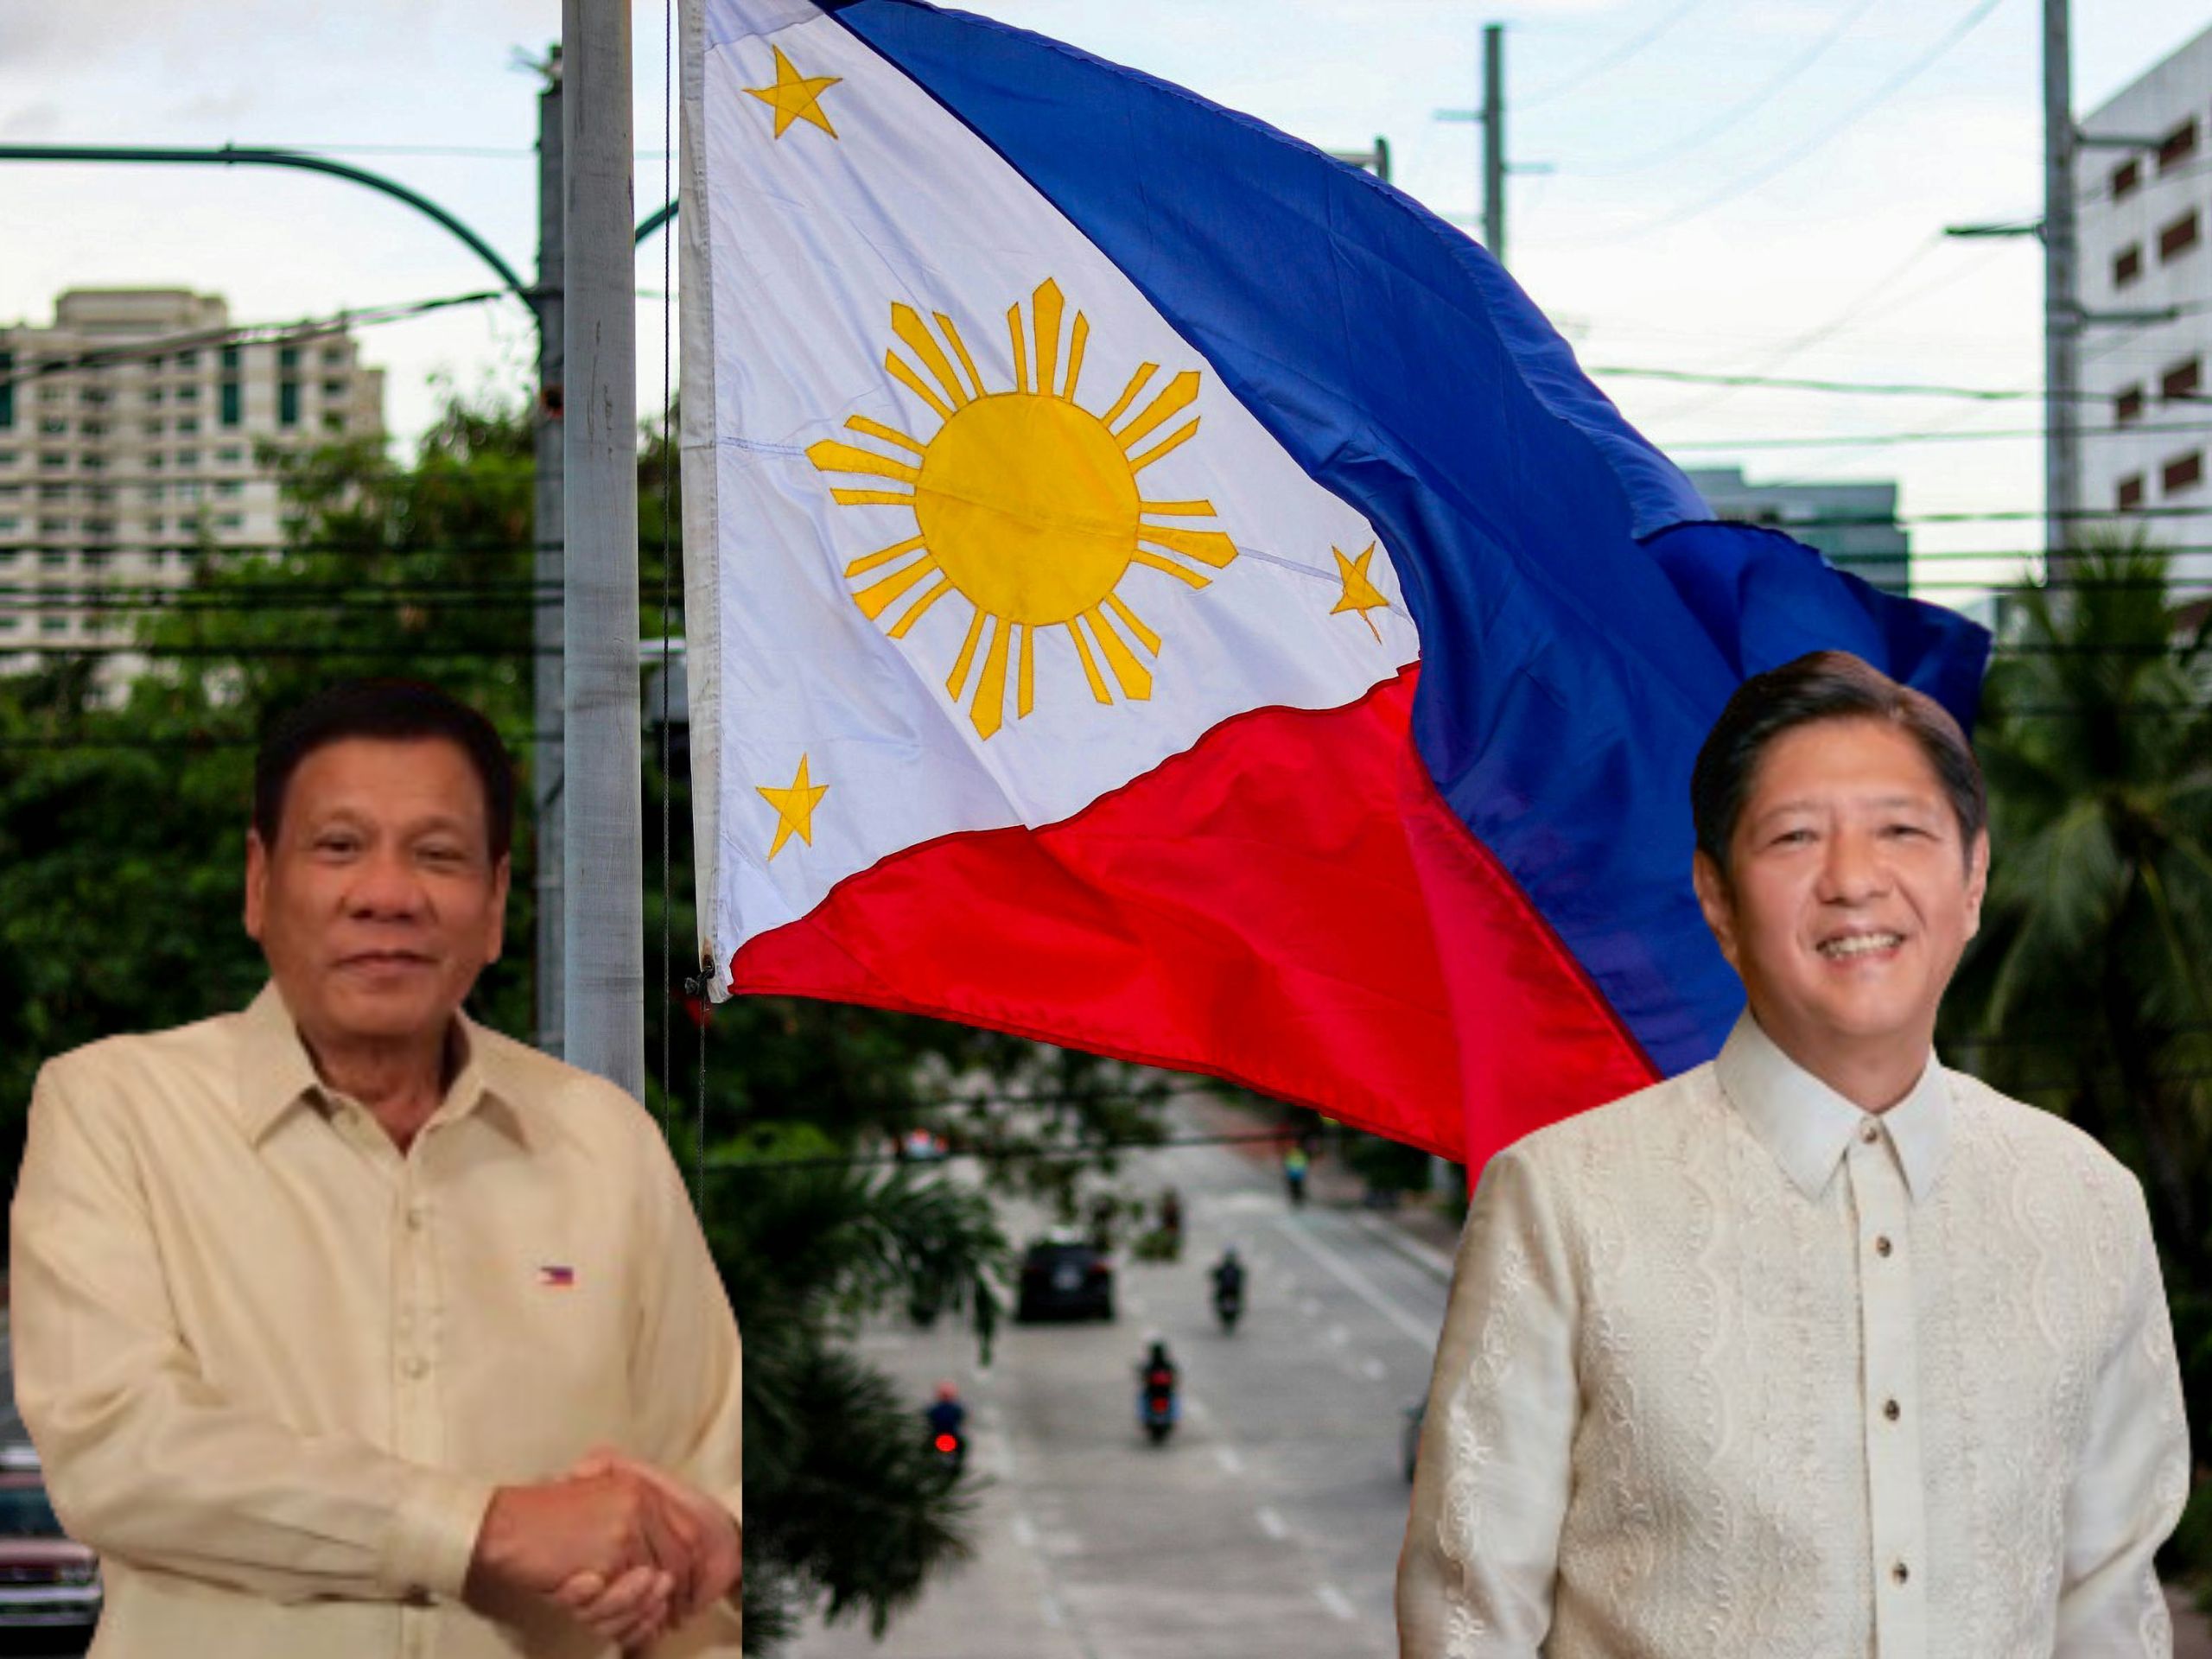 Zrywając współpracę z Marcosem juniorem, Rodrigo Duterte chce „wyzwolić” prowincję Mindanao.